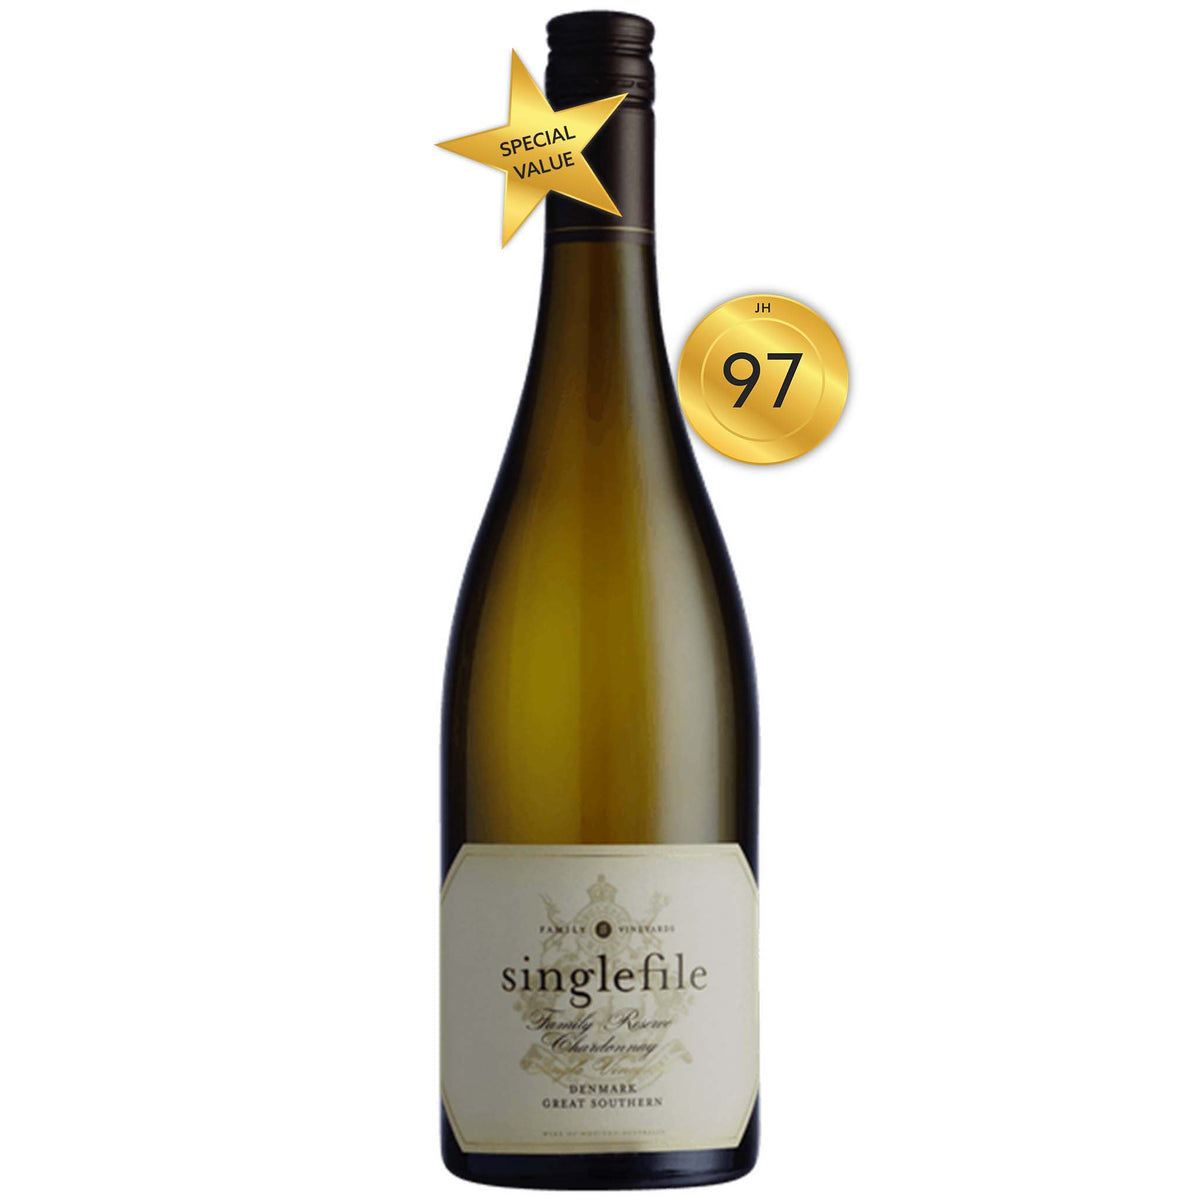 Singlefile Denmark Family Reserve Chardonnay 2015